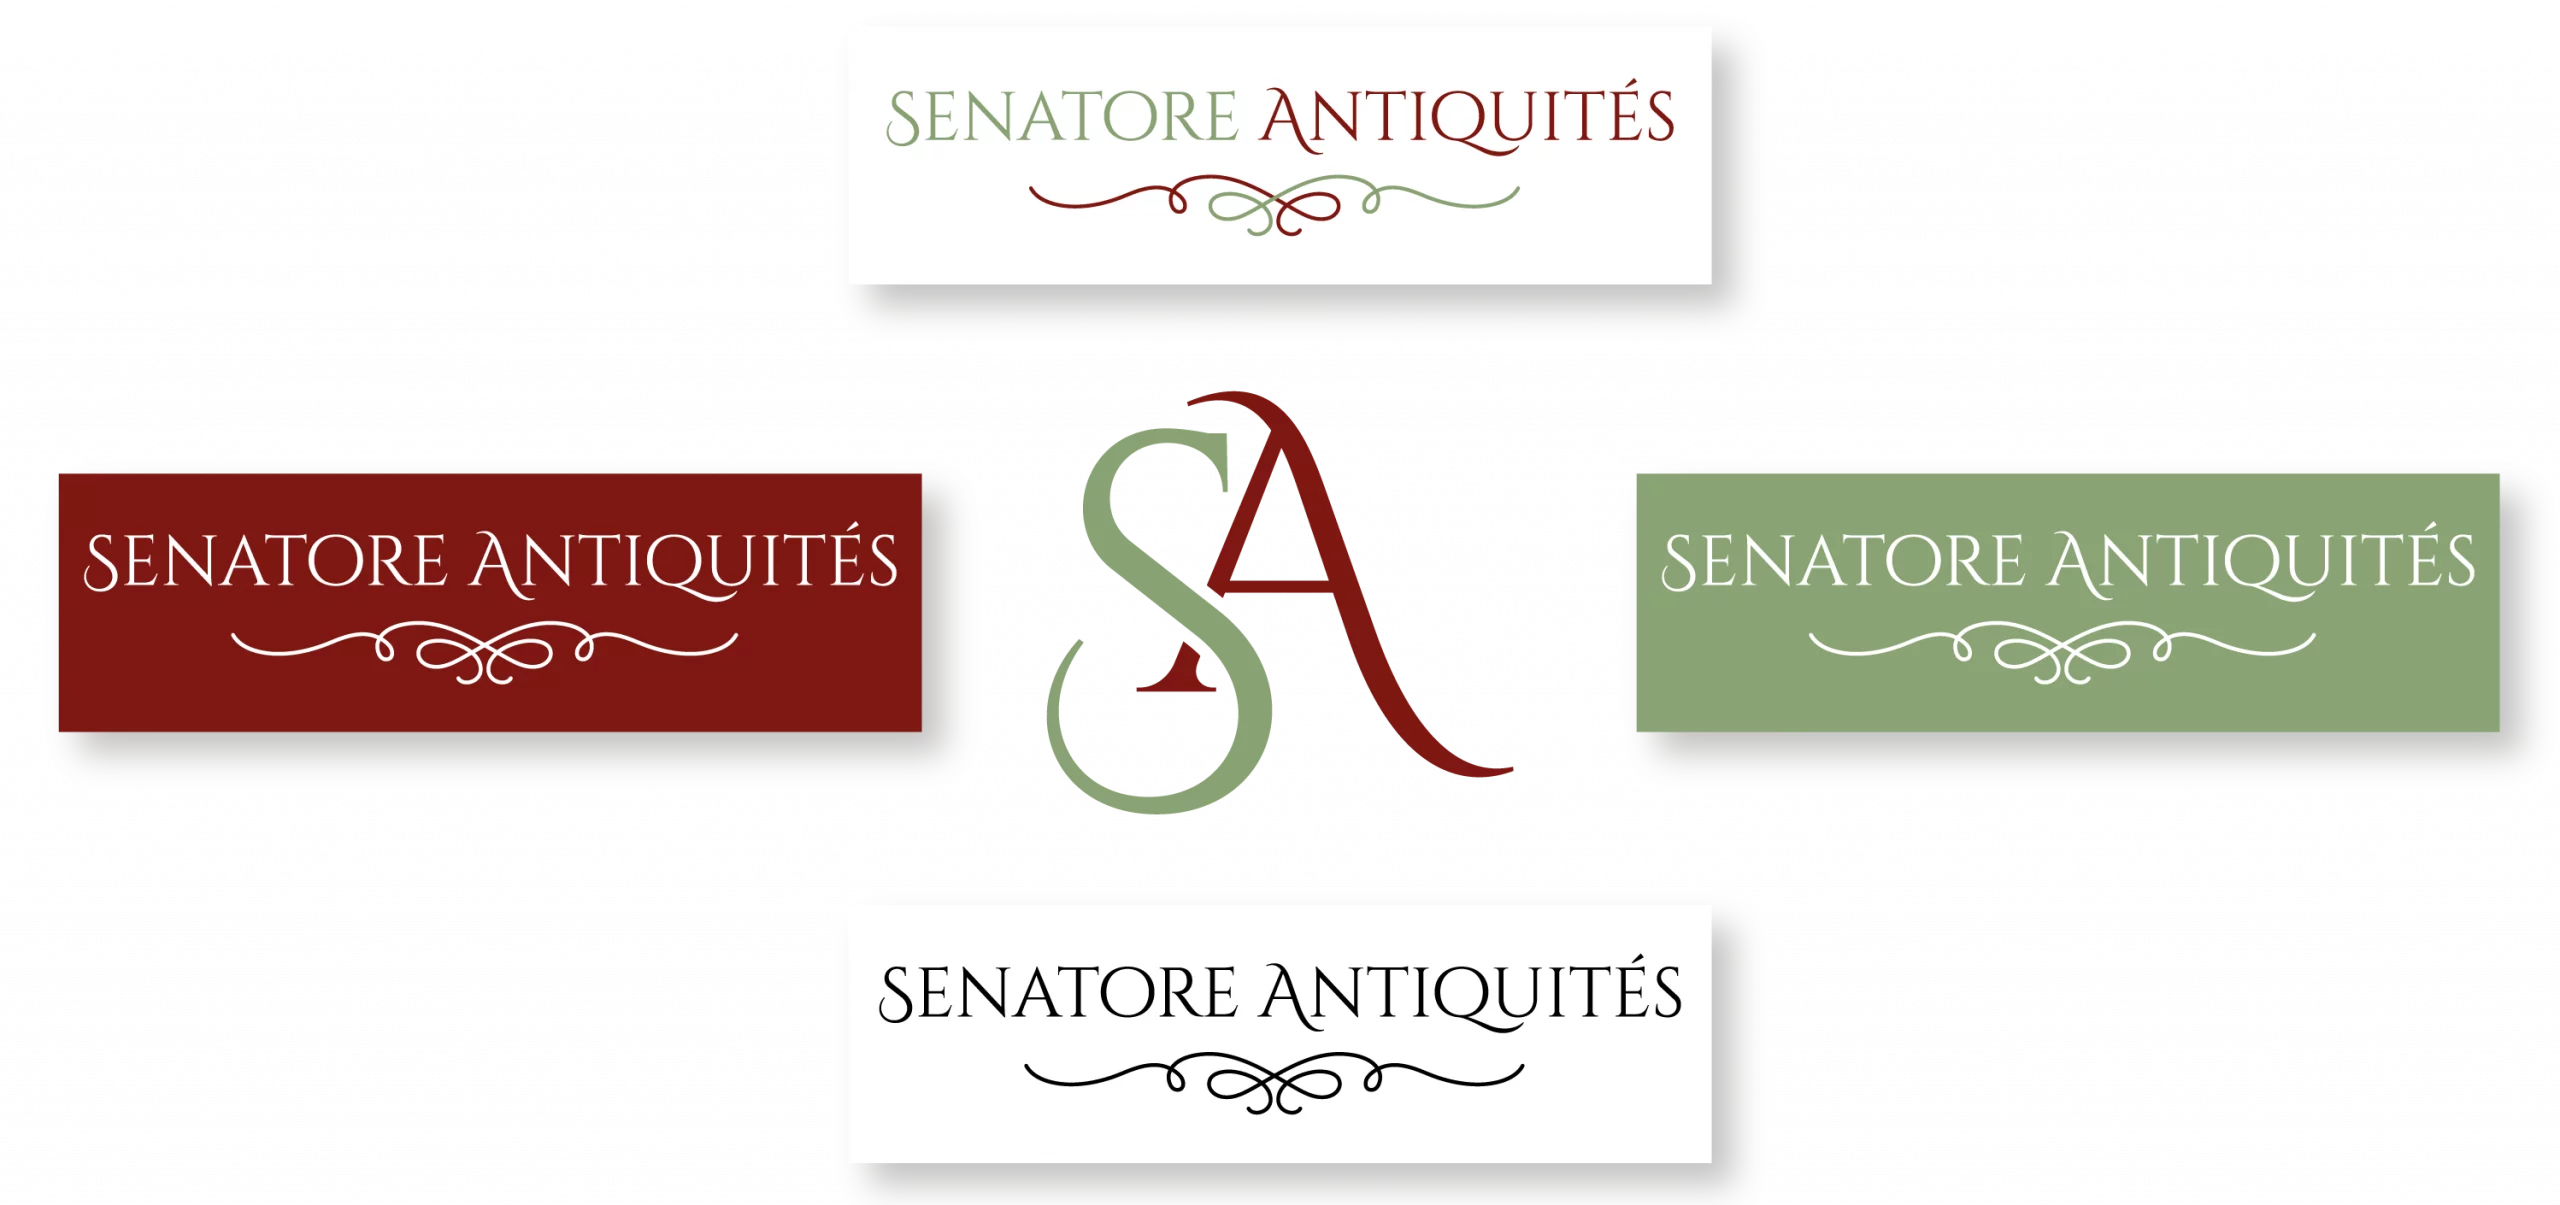 Créer un logo pour son activité professionnelle « Senatore Antiquités ». Celui-ci doit être simple et rappelé son secteur sans pour autant paraître vieillissant. 